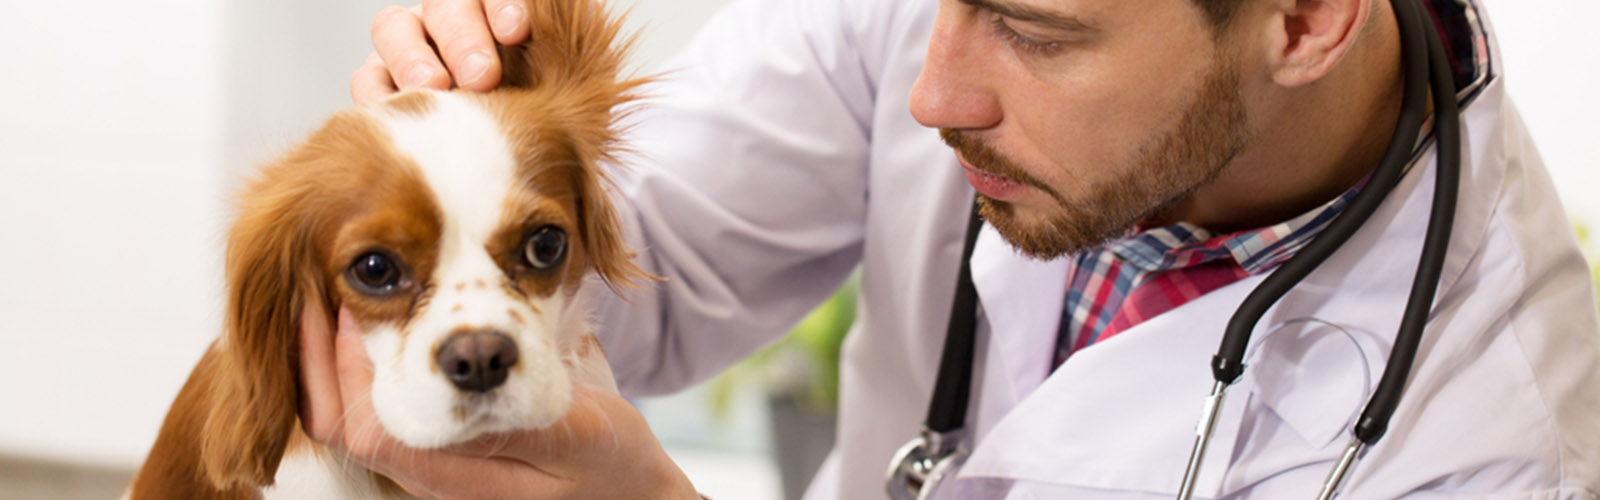 Visit Our Overland Park Vet Clinic » Companion Care Veterinary Clinic |  Companion Care Veterinary Clinic